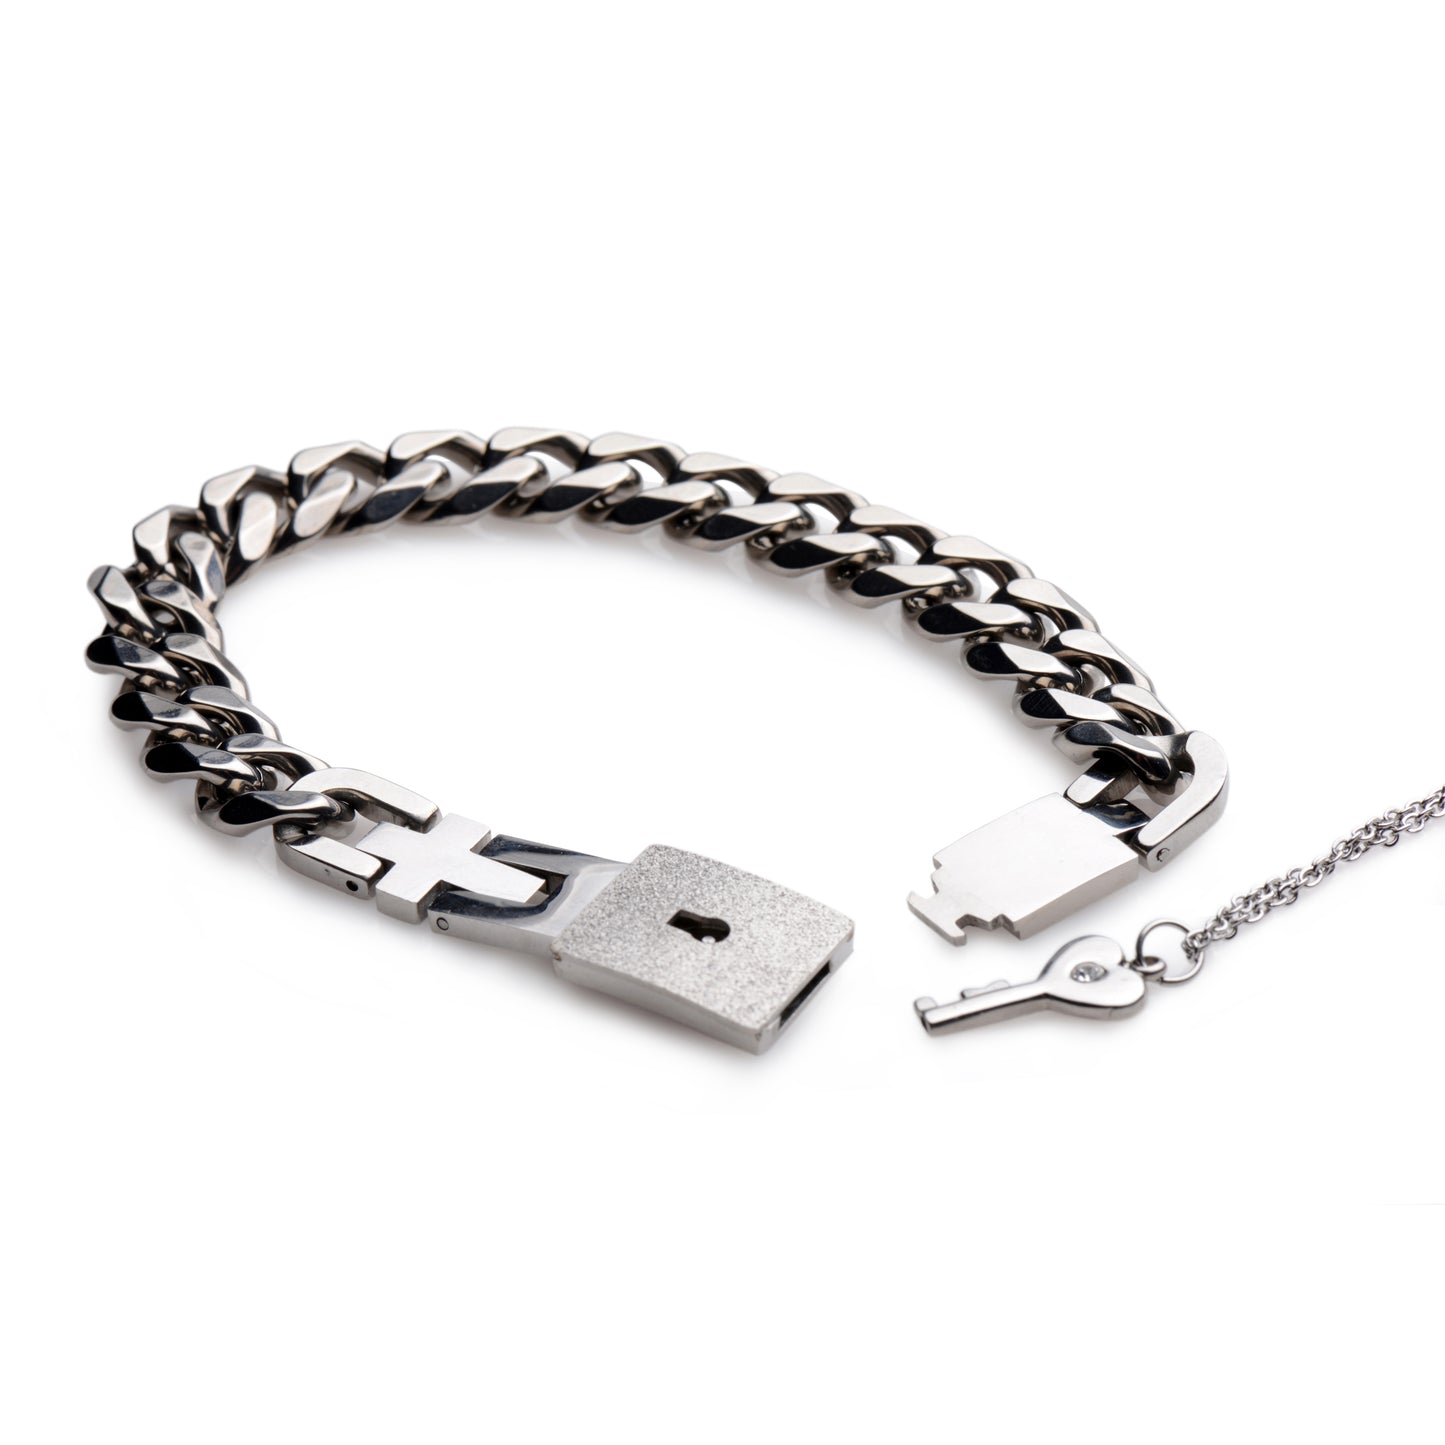 Chained Locking Bracelet and Key Necklace - UABDSM